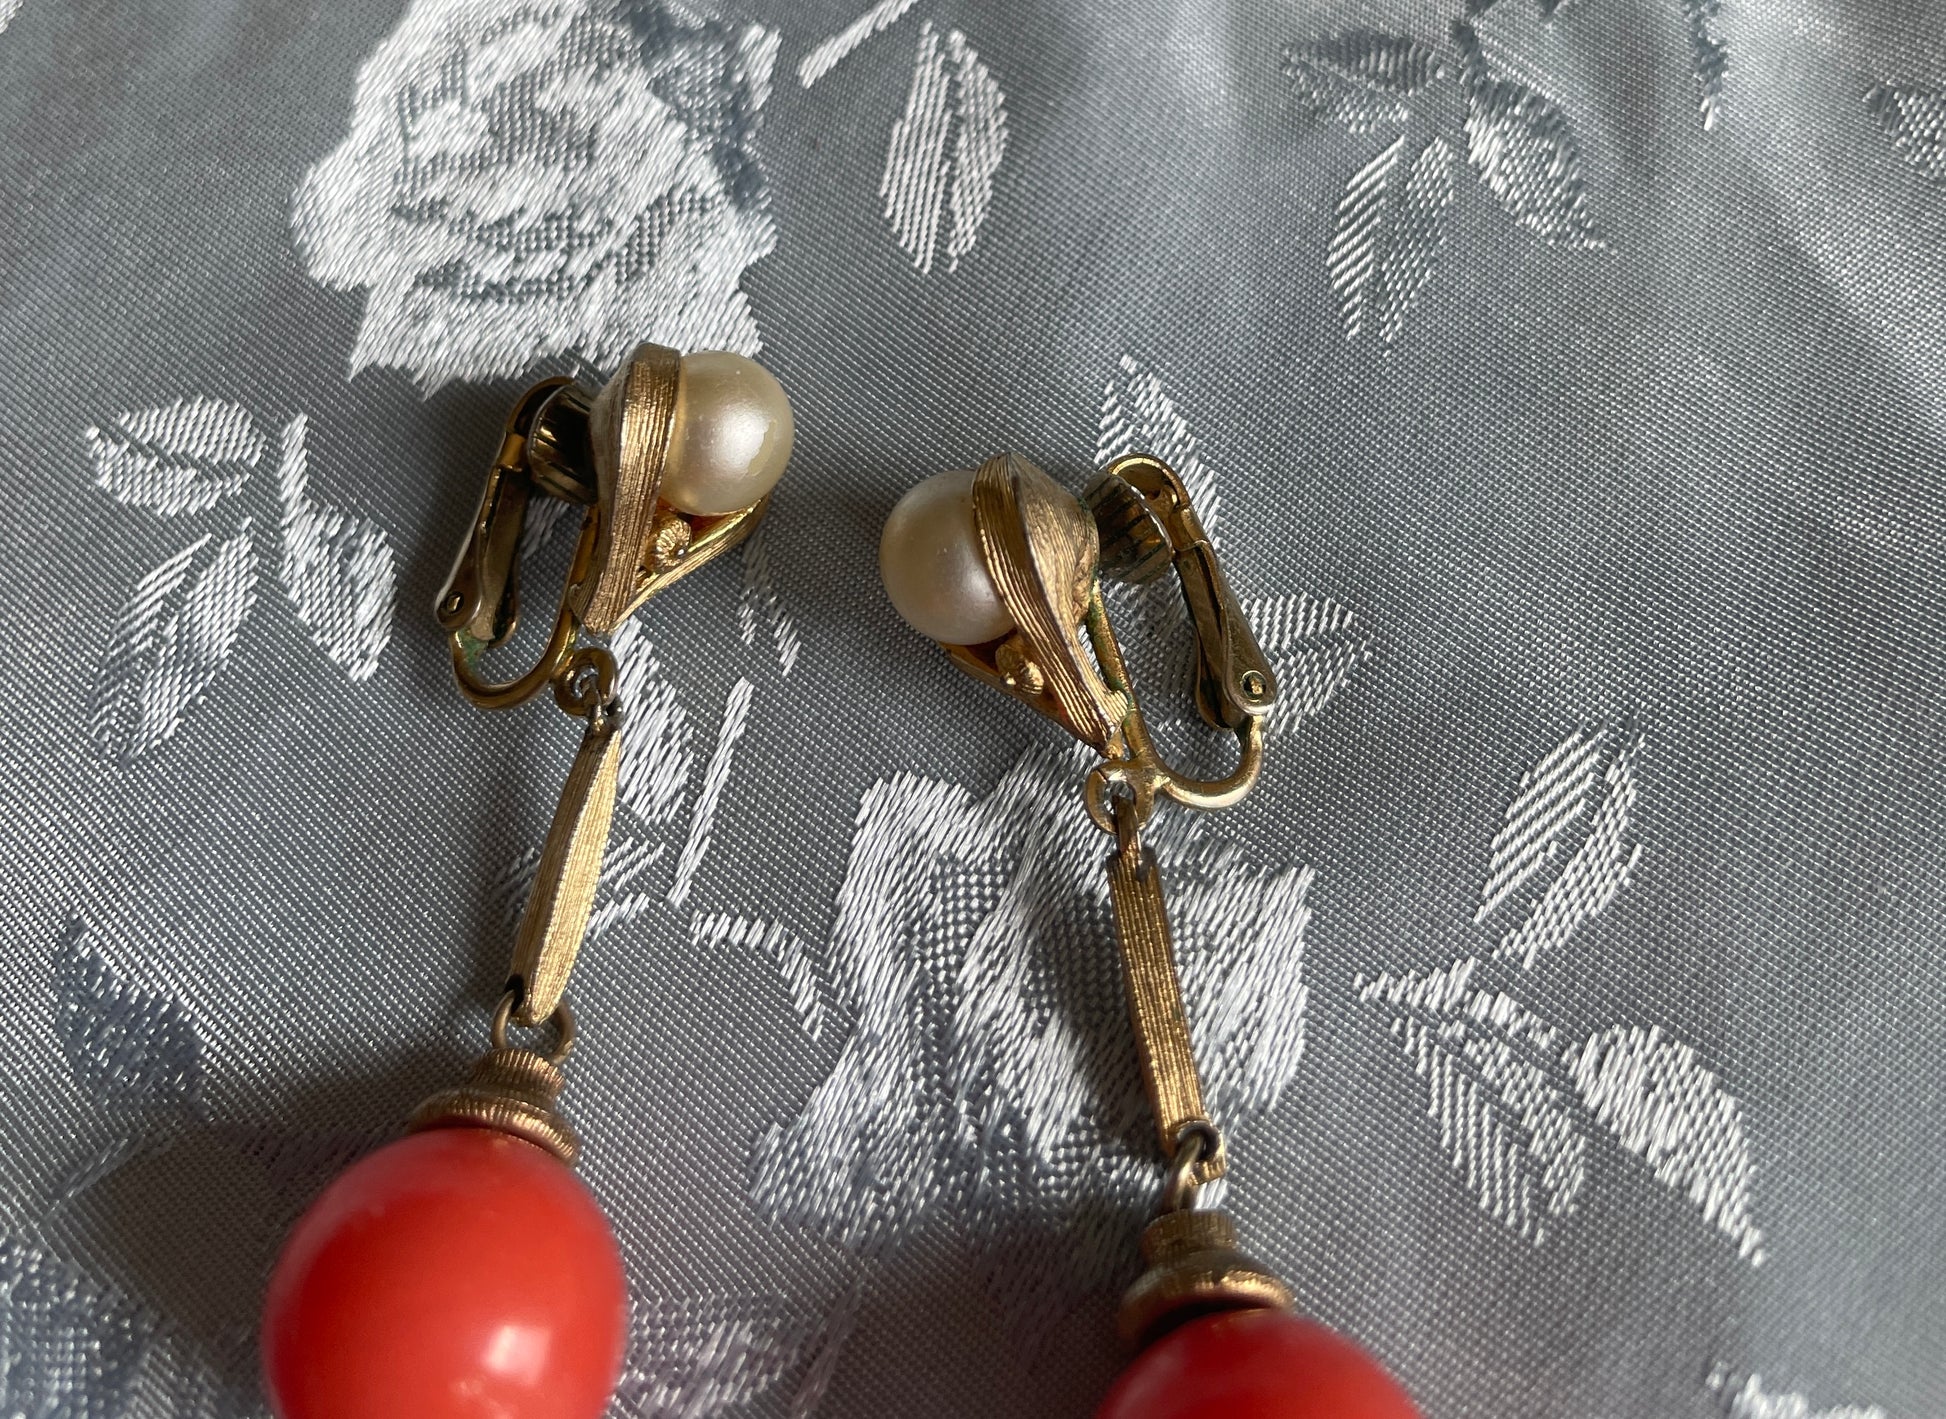  60s Orange Bead Faux Pearl Clip Earrings